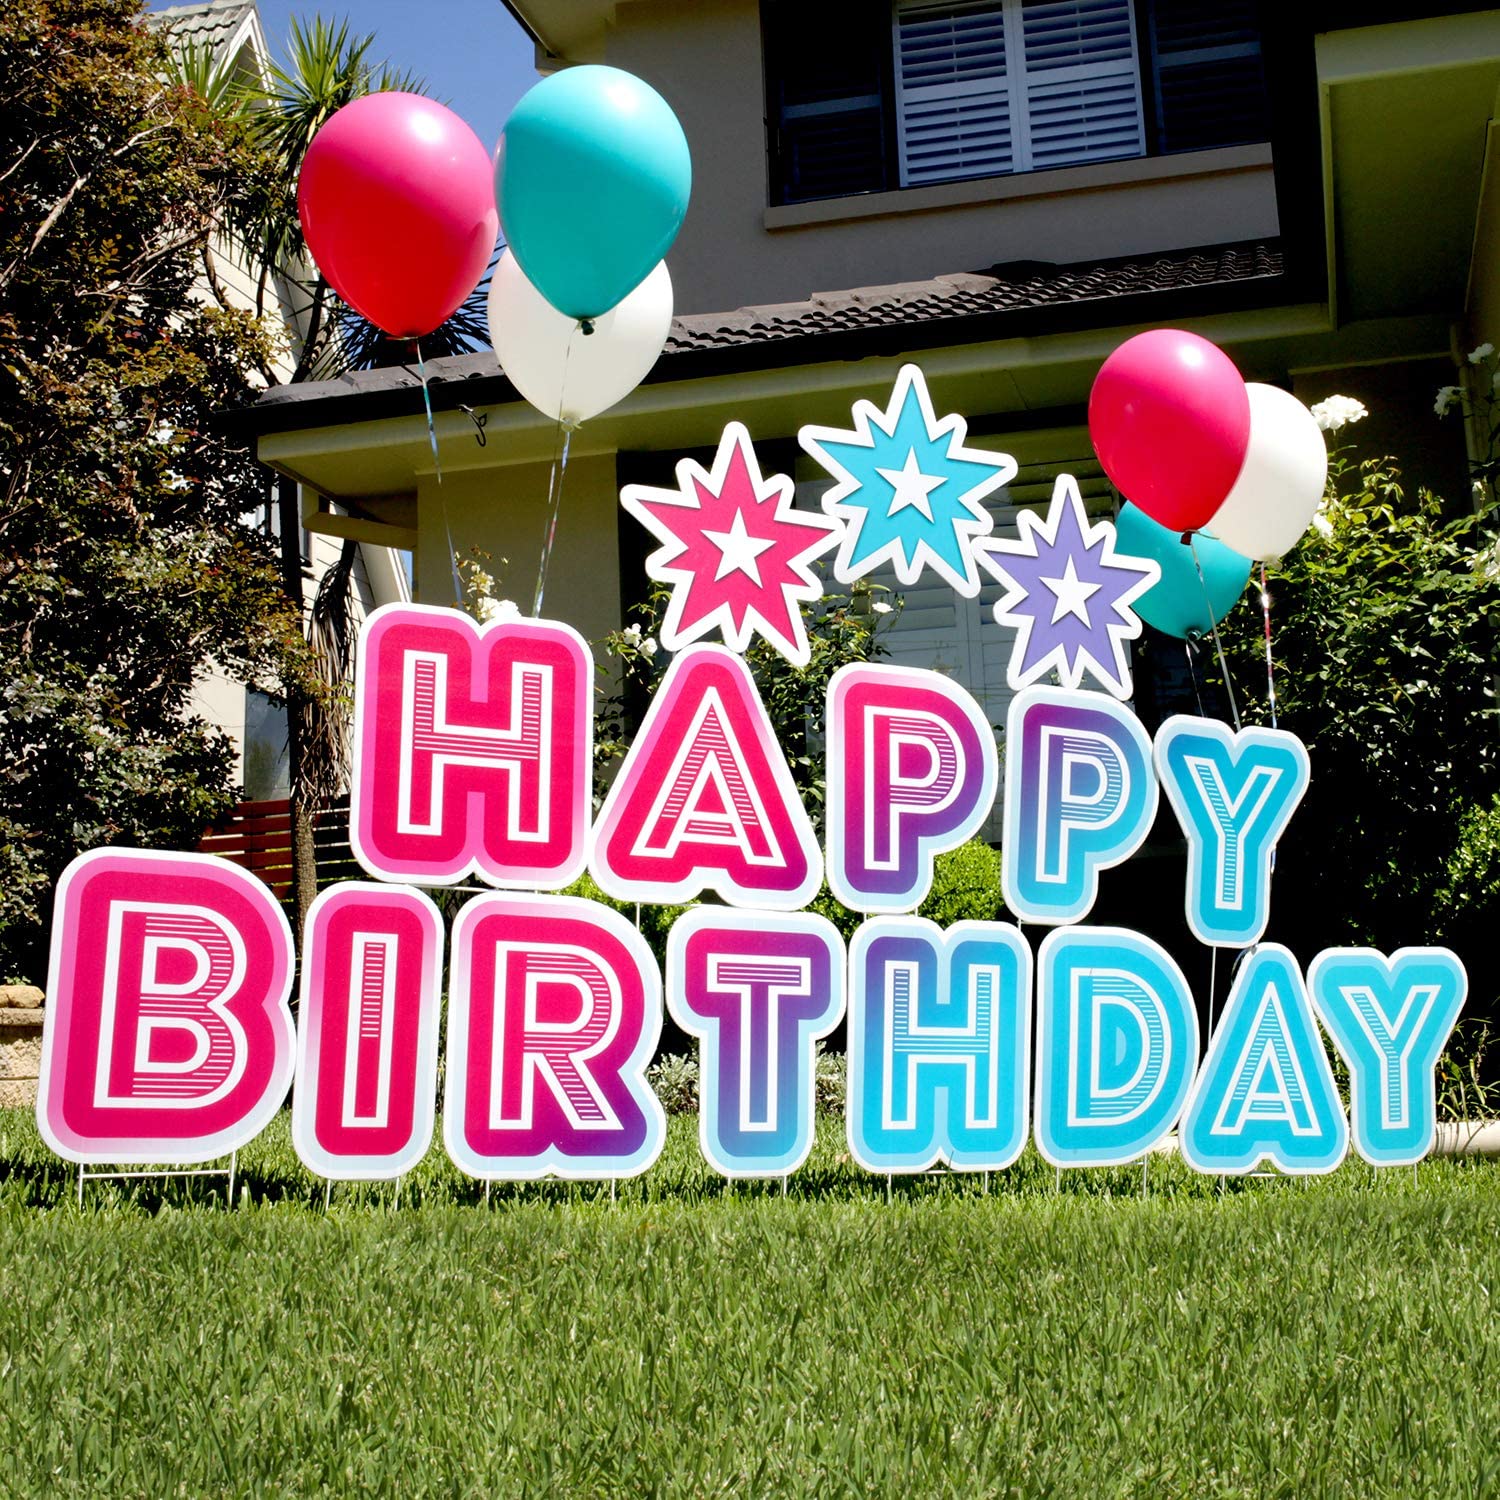 ערכת שלטים לחצר יום הולדת שמח 3 ב-1 מכתבים לדשא יום הולדת להתקנה קלה לשימוש חוזר שלטים לחצר יום הולדת שמח עם יתדות וכוכבים (46 x 160 אינץ') תמונה מוצגת